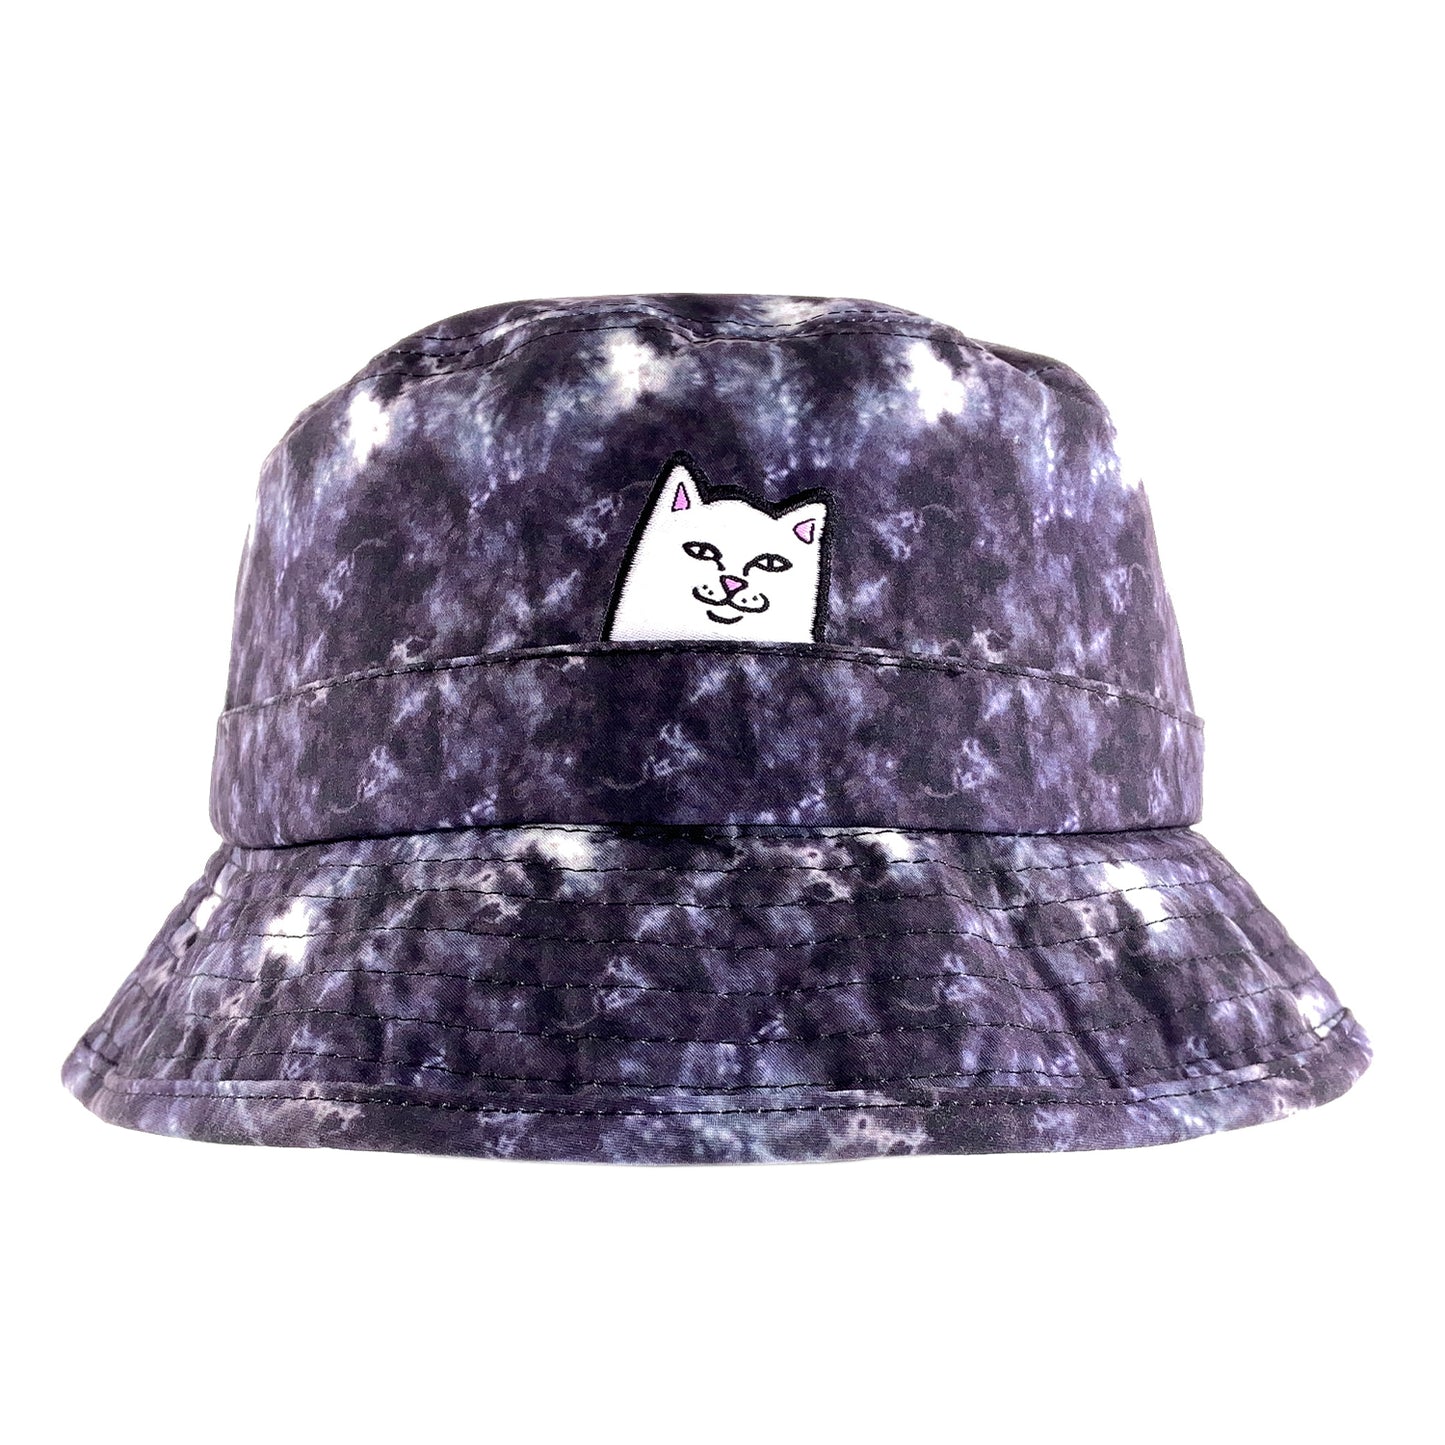 RIPNDIP - Lord Nermal Tie Dye Bucket Hat - Black Wash - Prime Delux Store